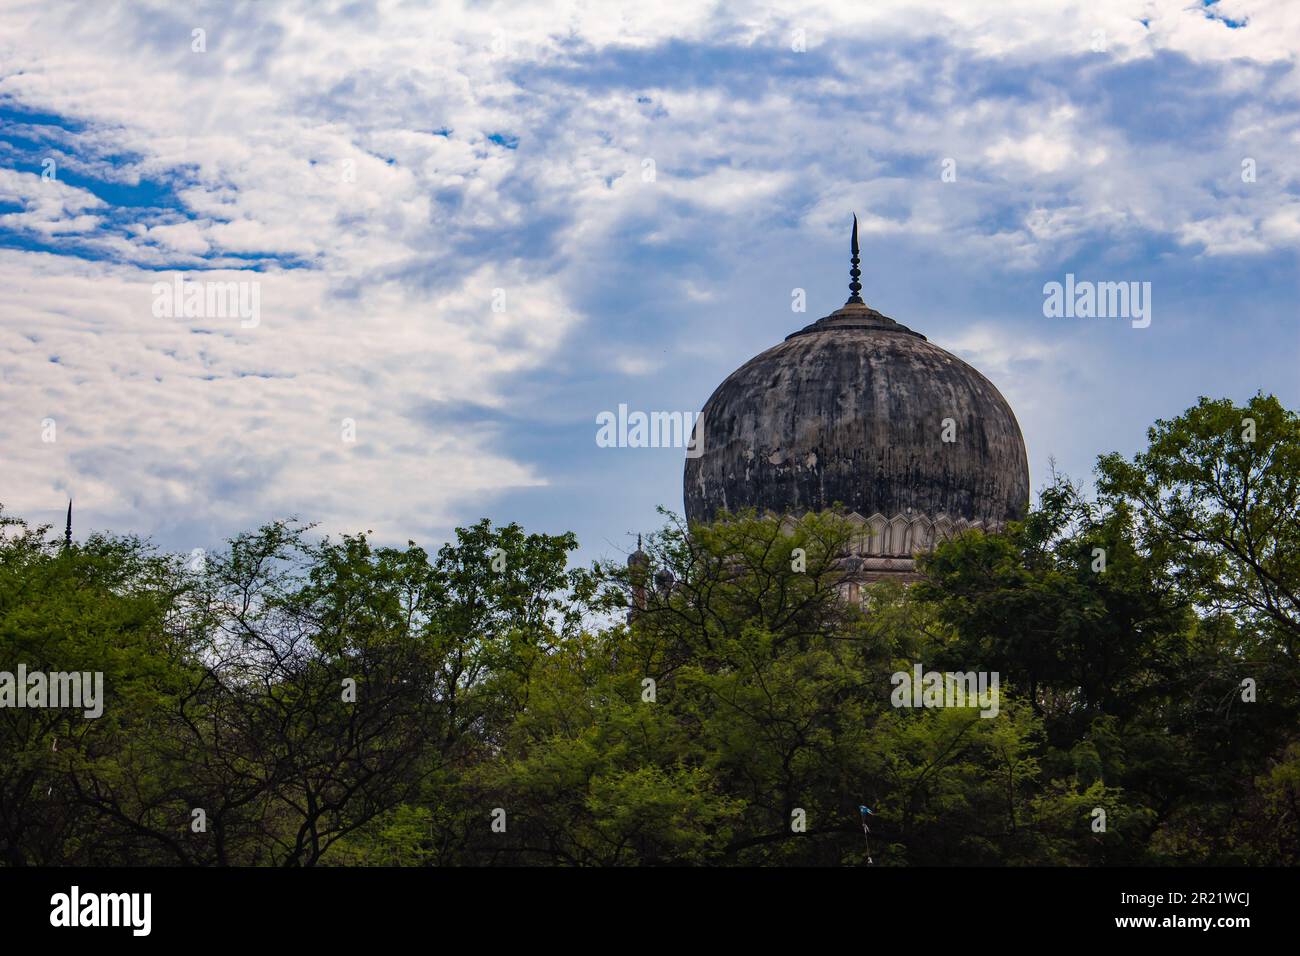 Dôme d'un bâtiment tombeau historique dans le parc archéologique de Qutb Shahi, Hyderabad, Inde Banque D'Images